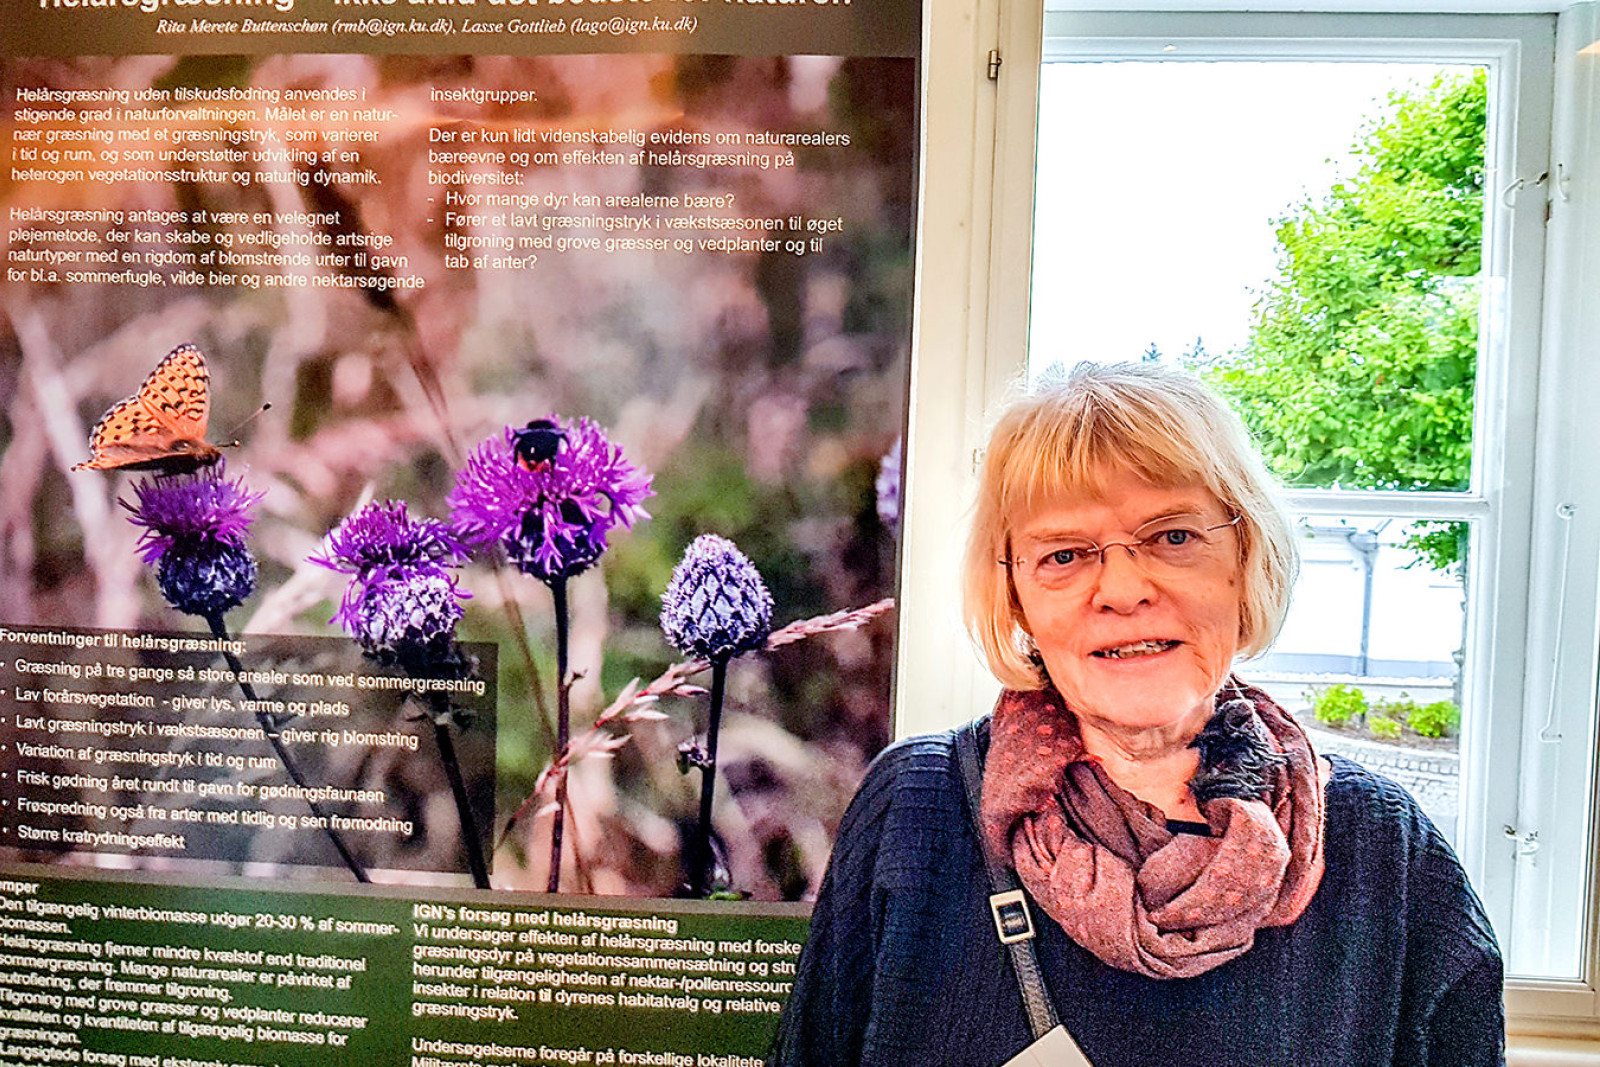 Rita Buttenschøn, seniorrådgiver ved KU, mødte op på konferencen med en poster, der fortalte, at helårsgræsning ikke altid er det bedste for naturen. I stedet anbefaler hun, at naturen med års mellemrum afbrændes af hensyn til biodiversiteten